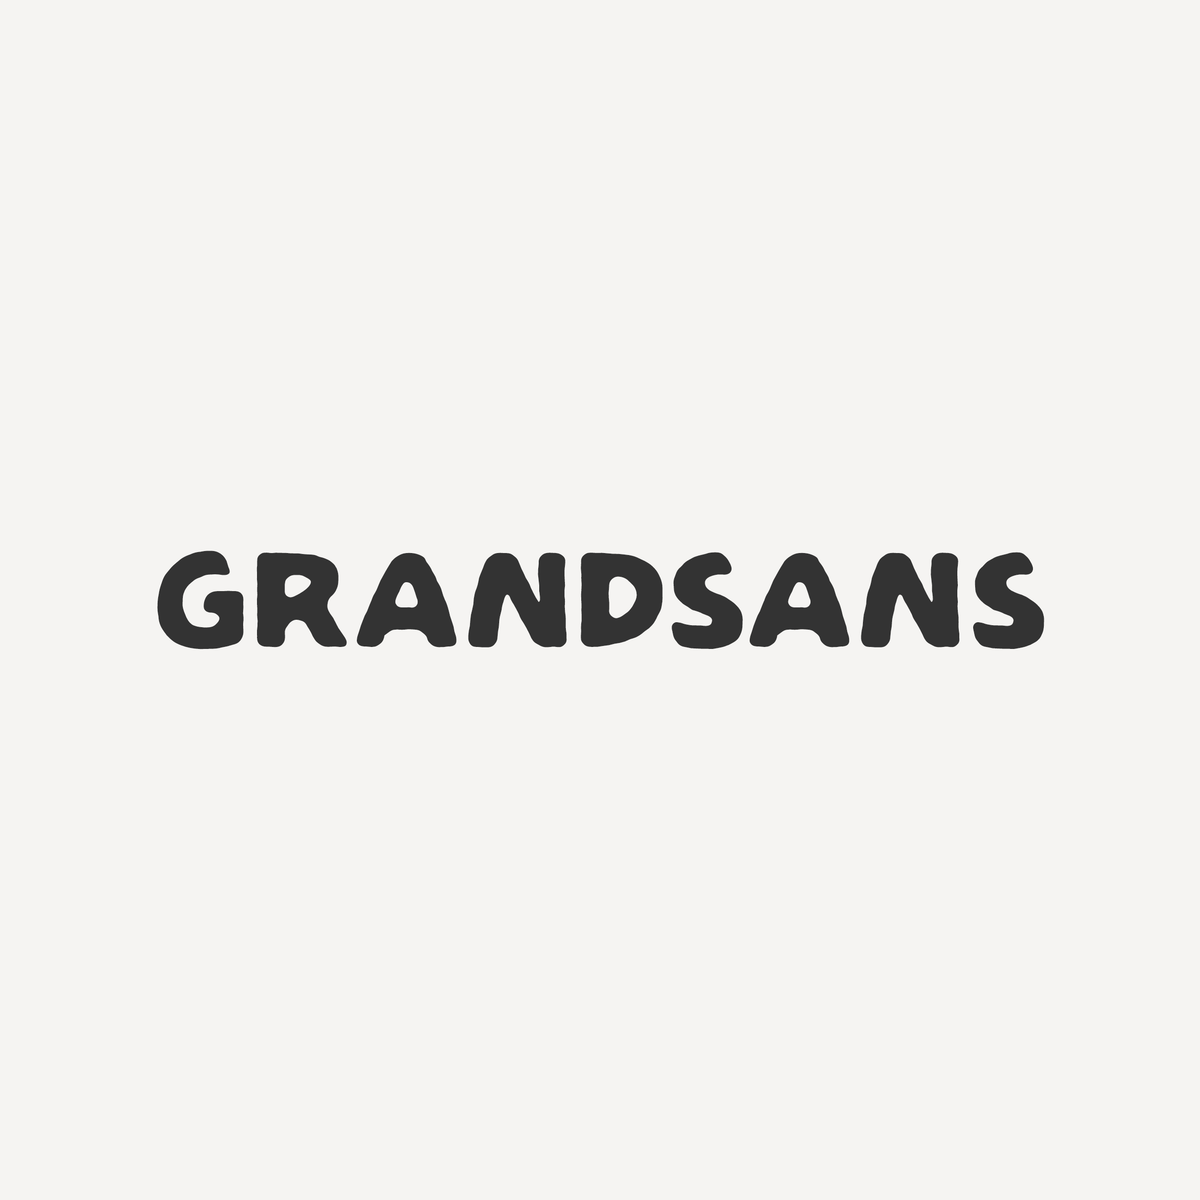 Grandsans